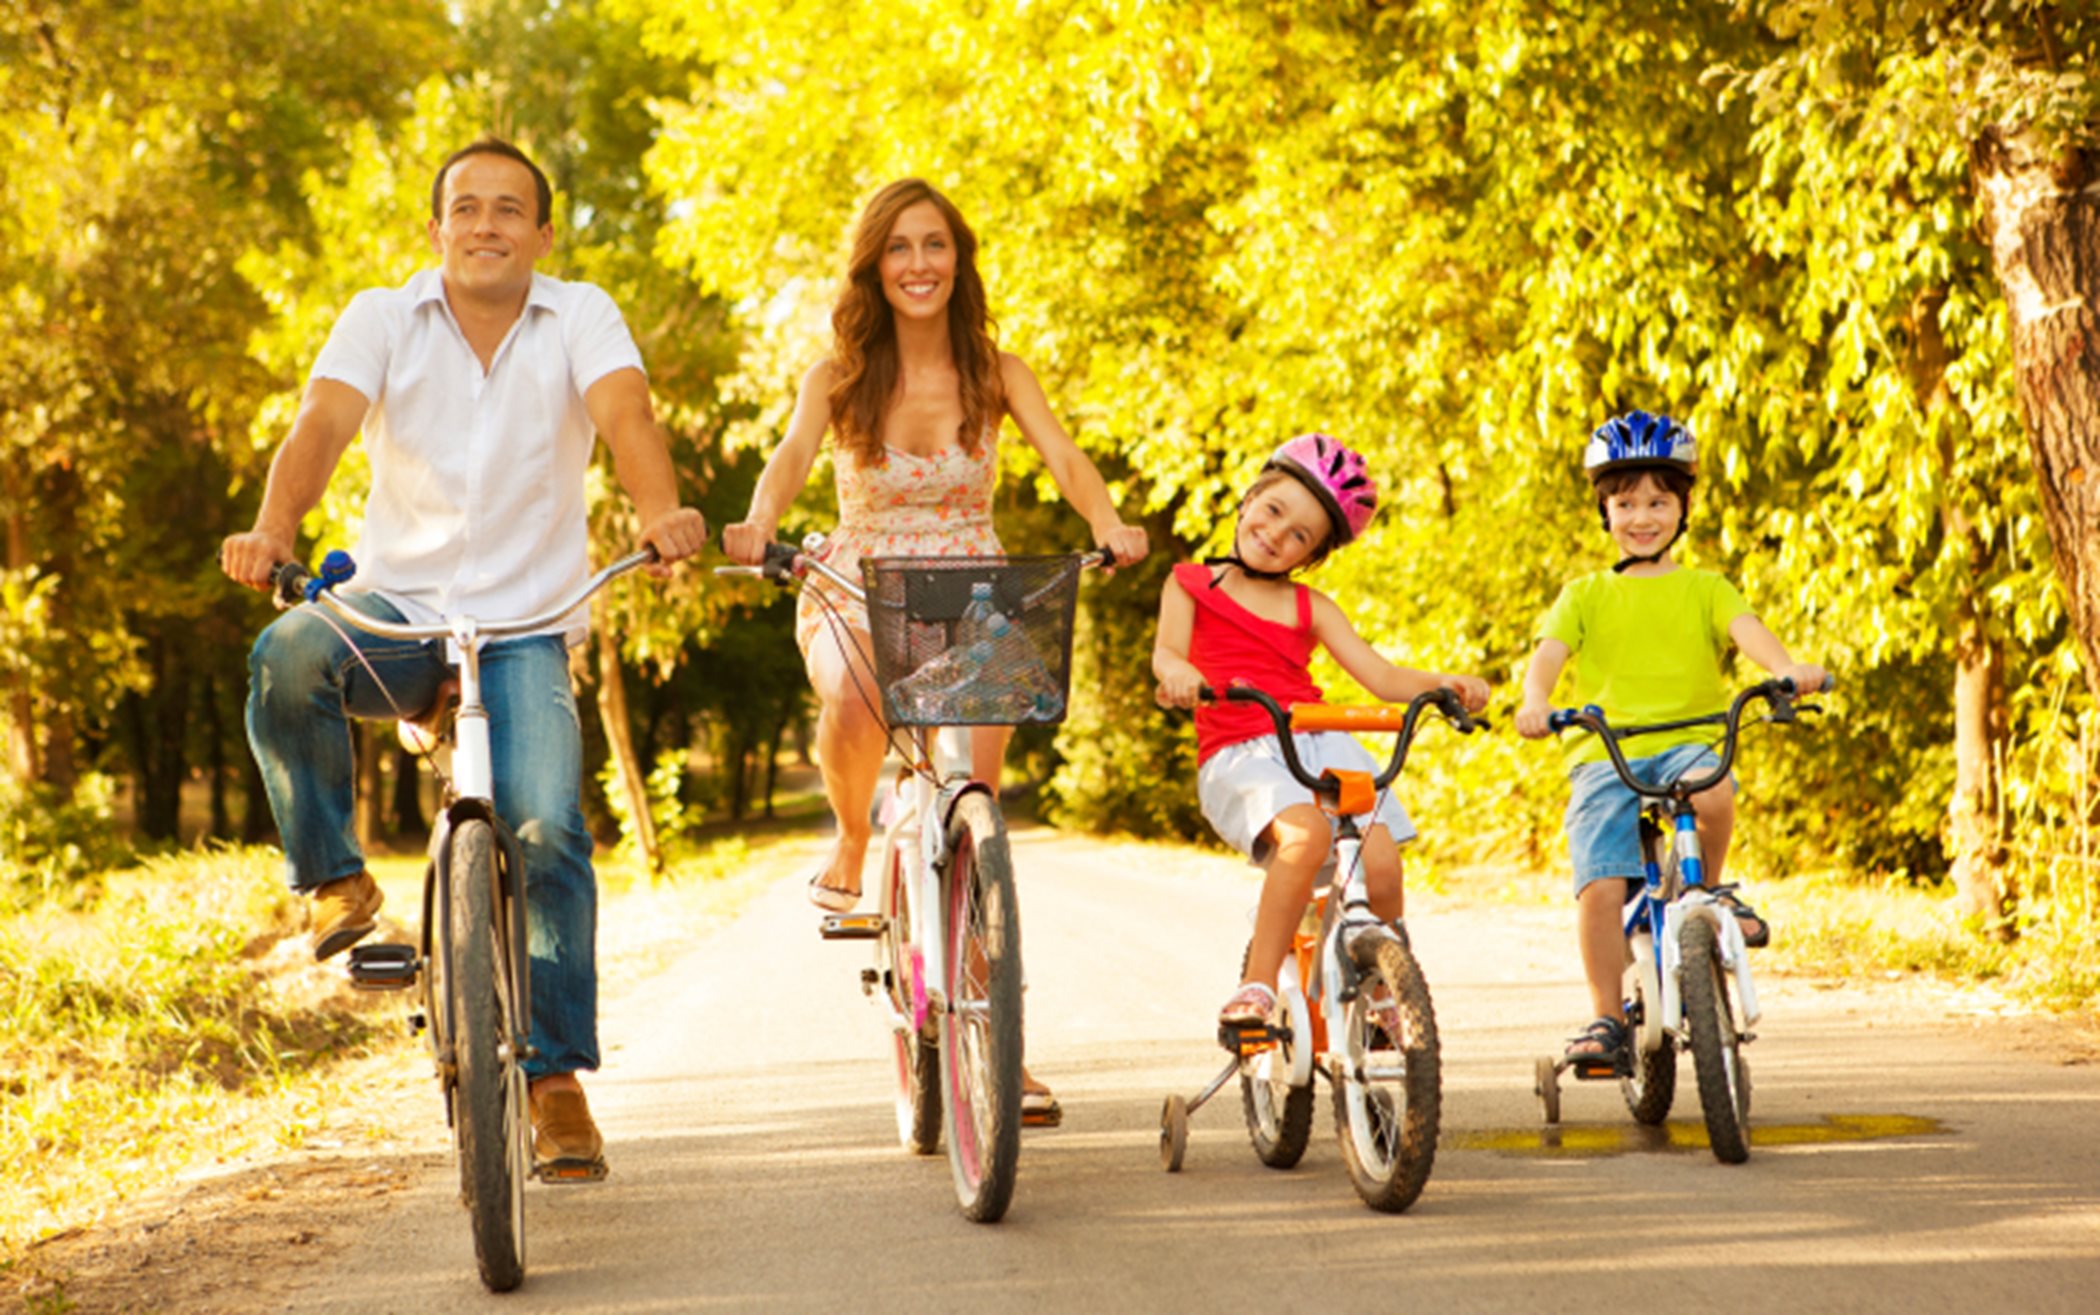 A family riding bikes